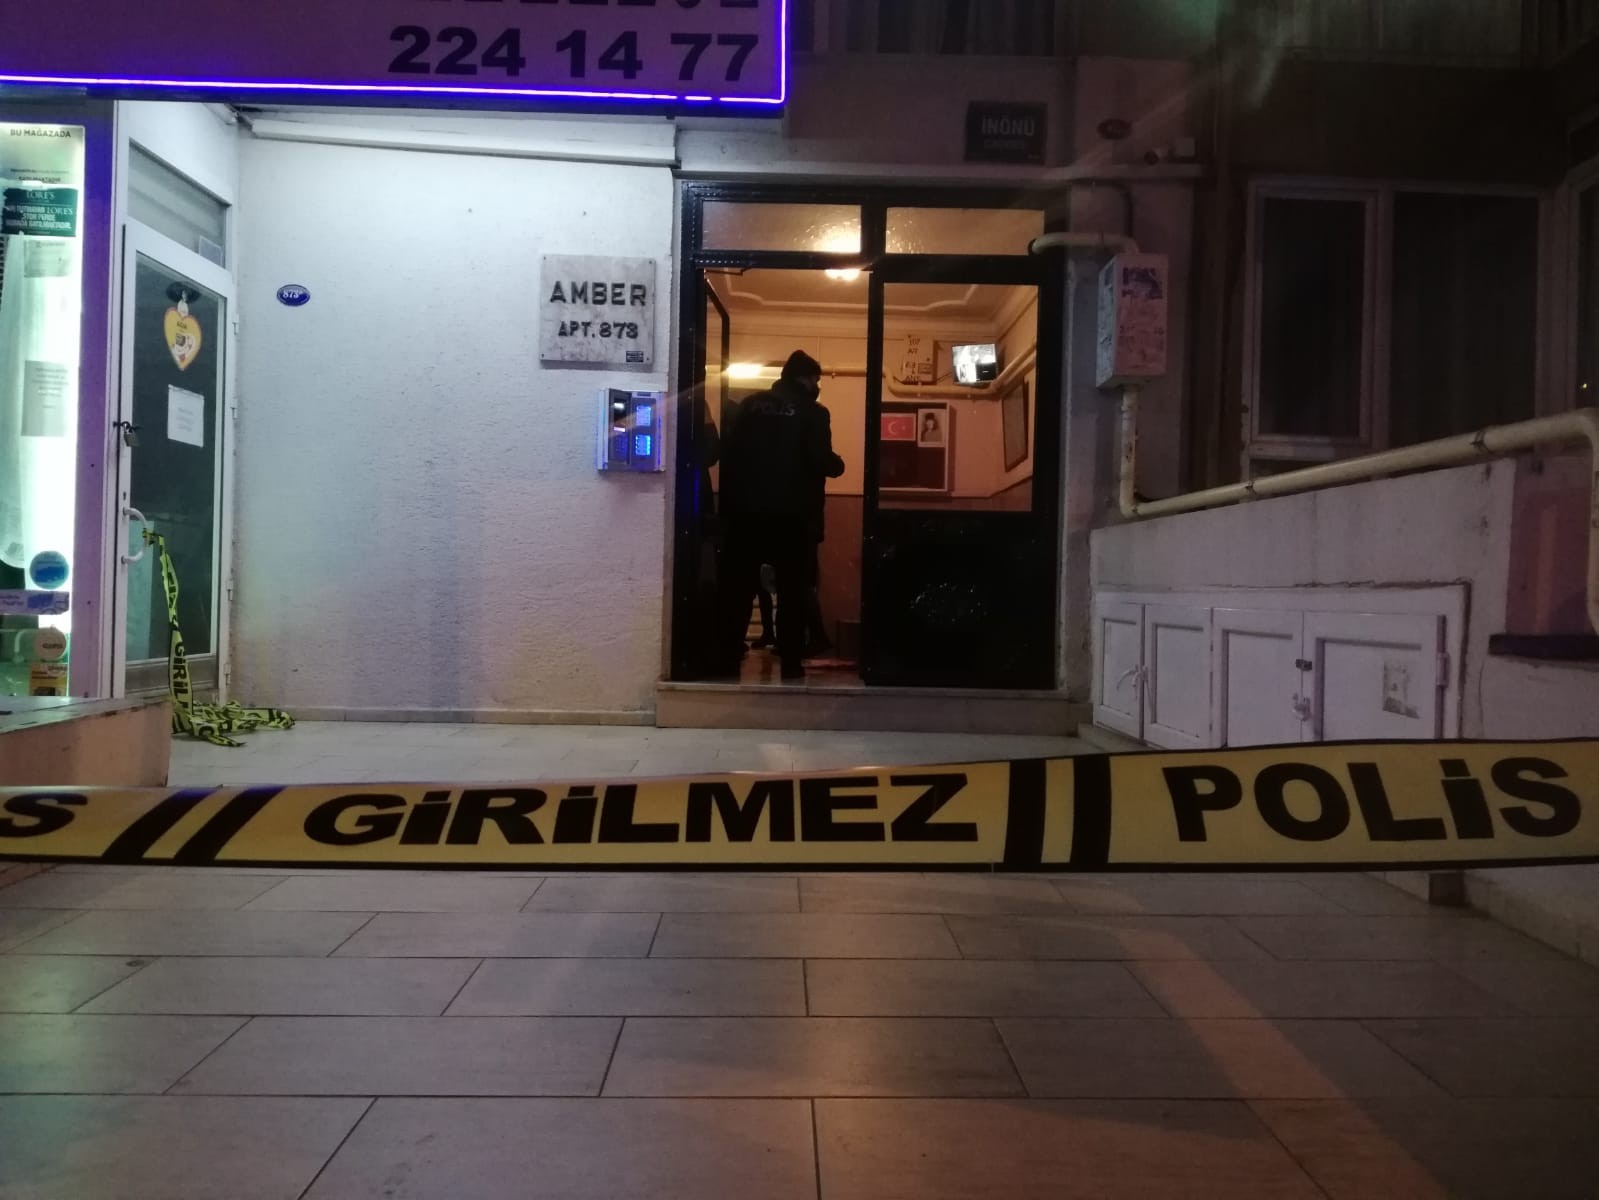 İzmir’de trans birey yaşadığı binanın girişinde ölü bulundu #izmir